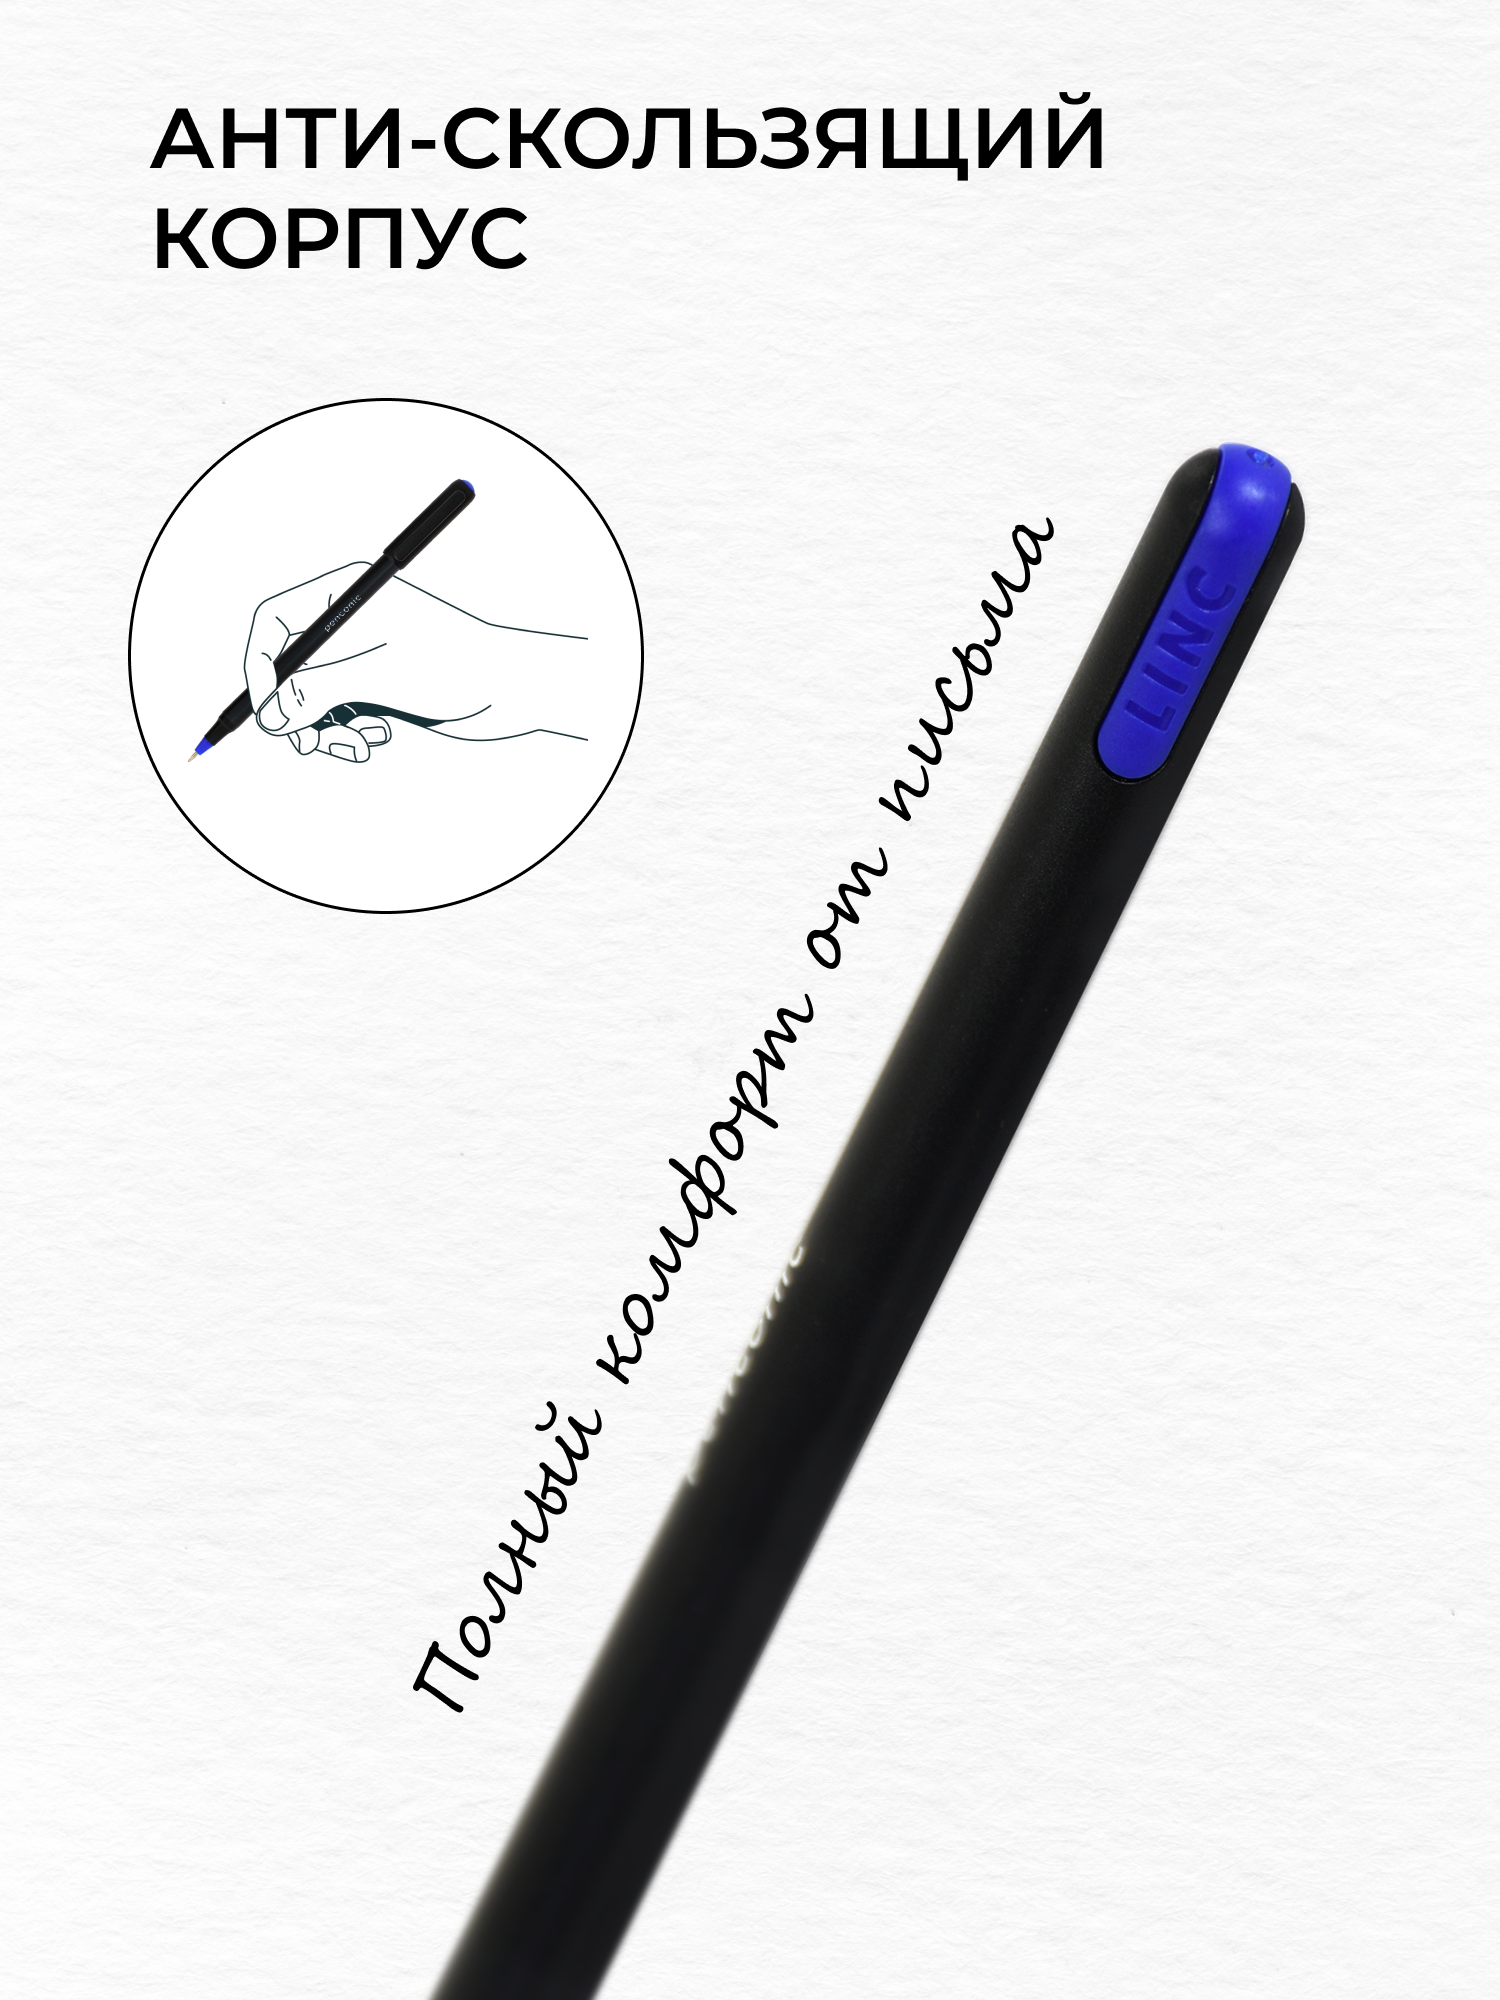 Ручки шариковые LINC синяя набор из 3 штук для школы и офиса - фото 3